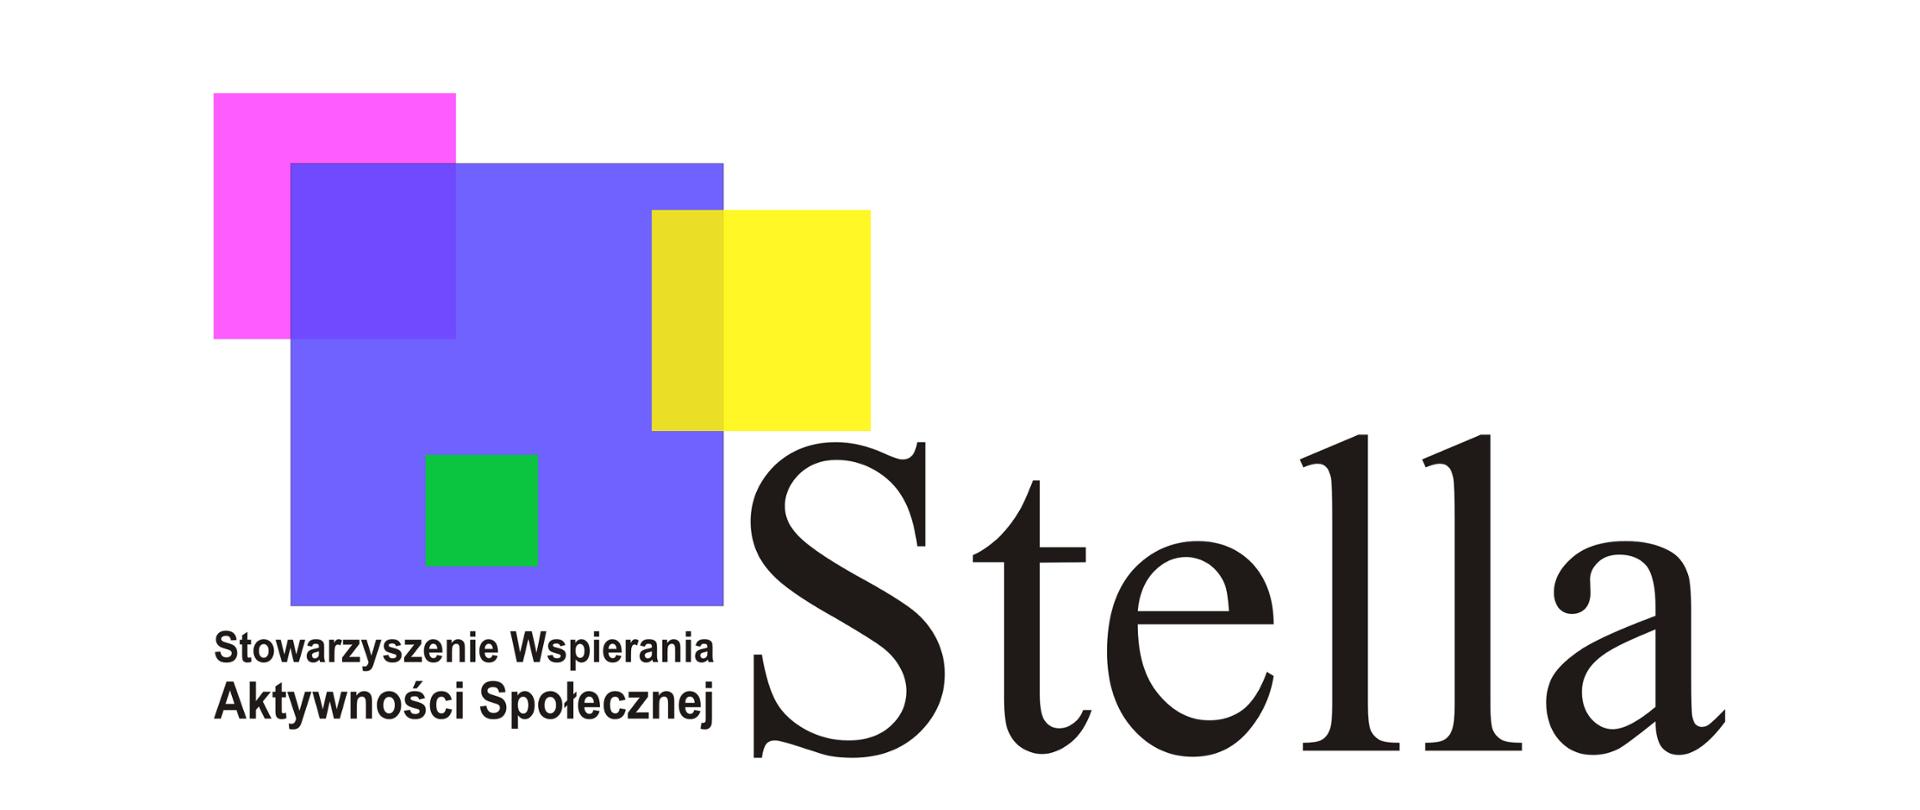 Stowarzyszenie Wspierania Aktywności Społecznej "Stella"